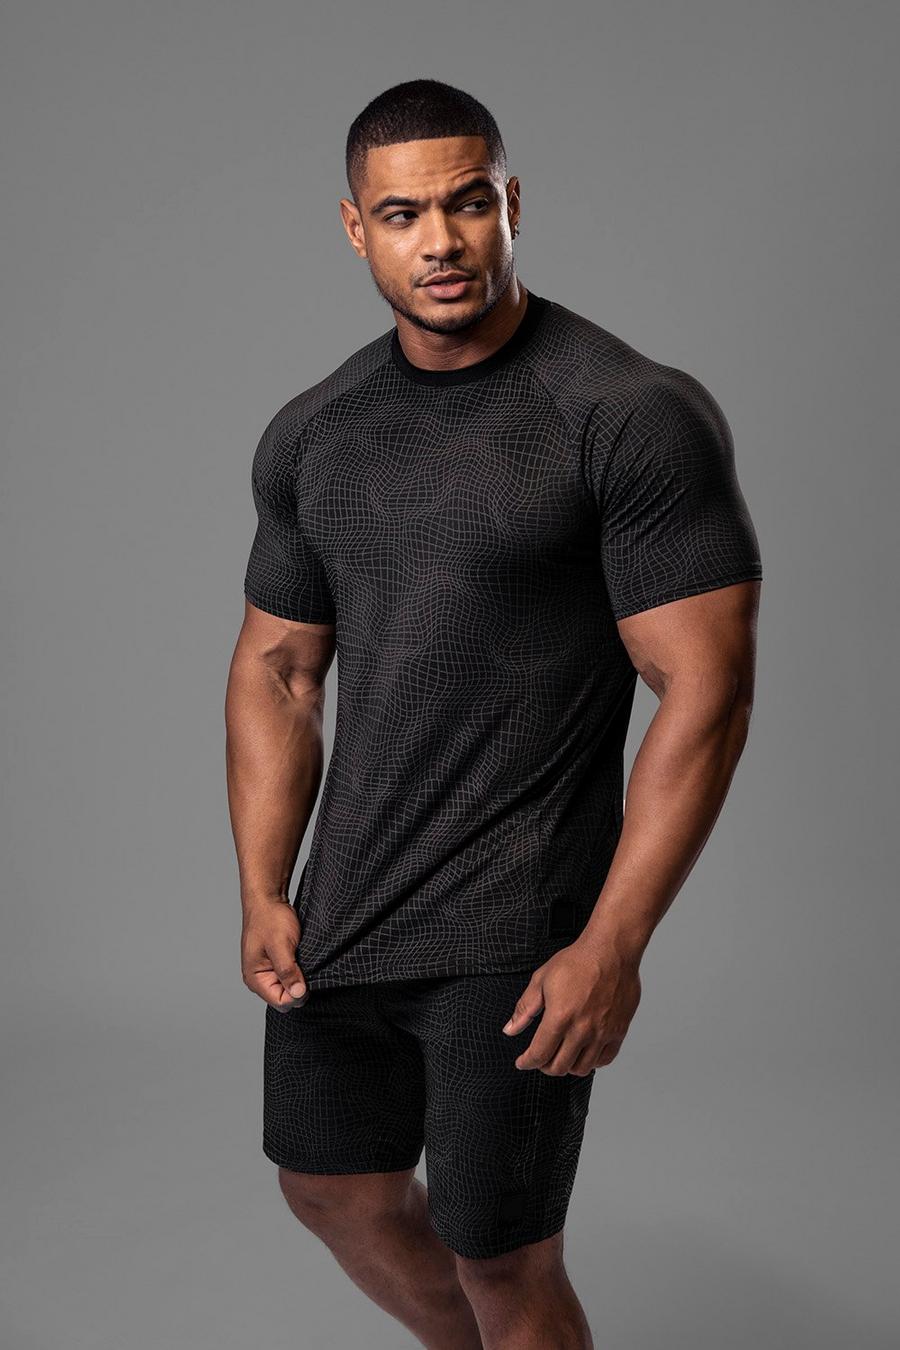 T-shirt Man Active Gym riflettente con stampa a griglia, Black nero